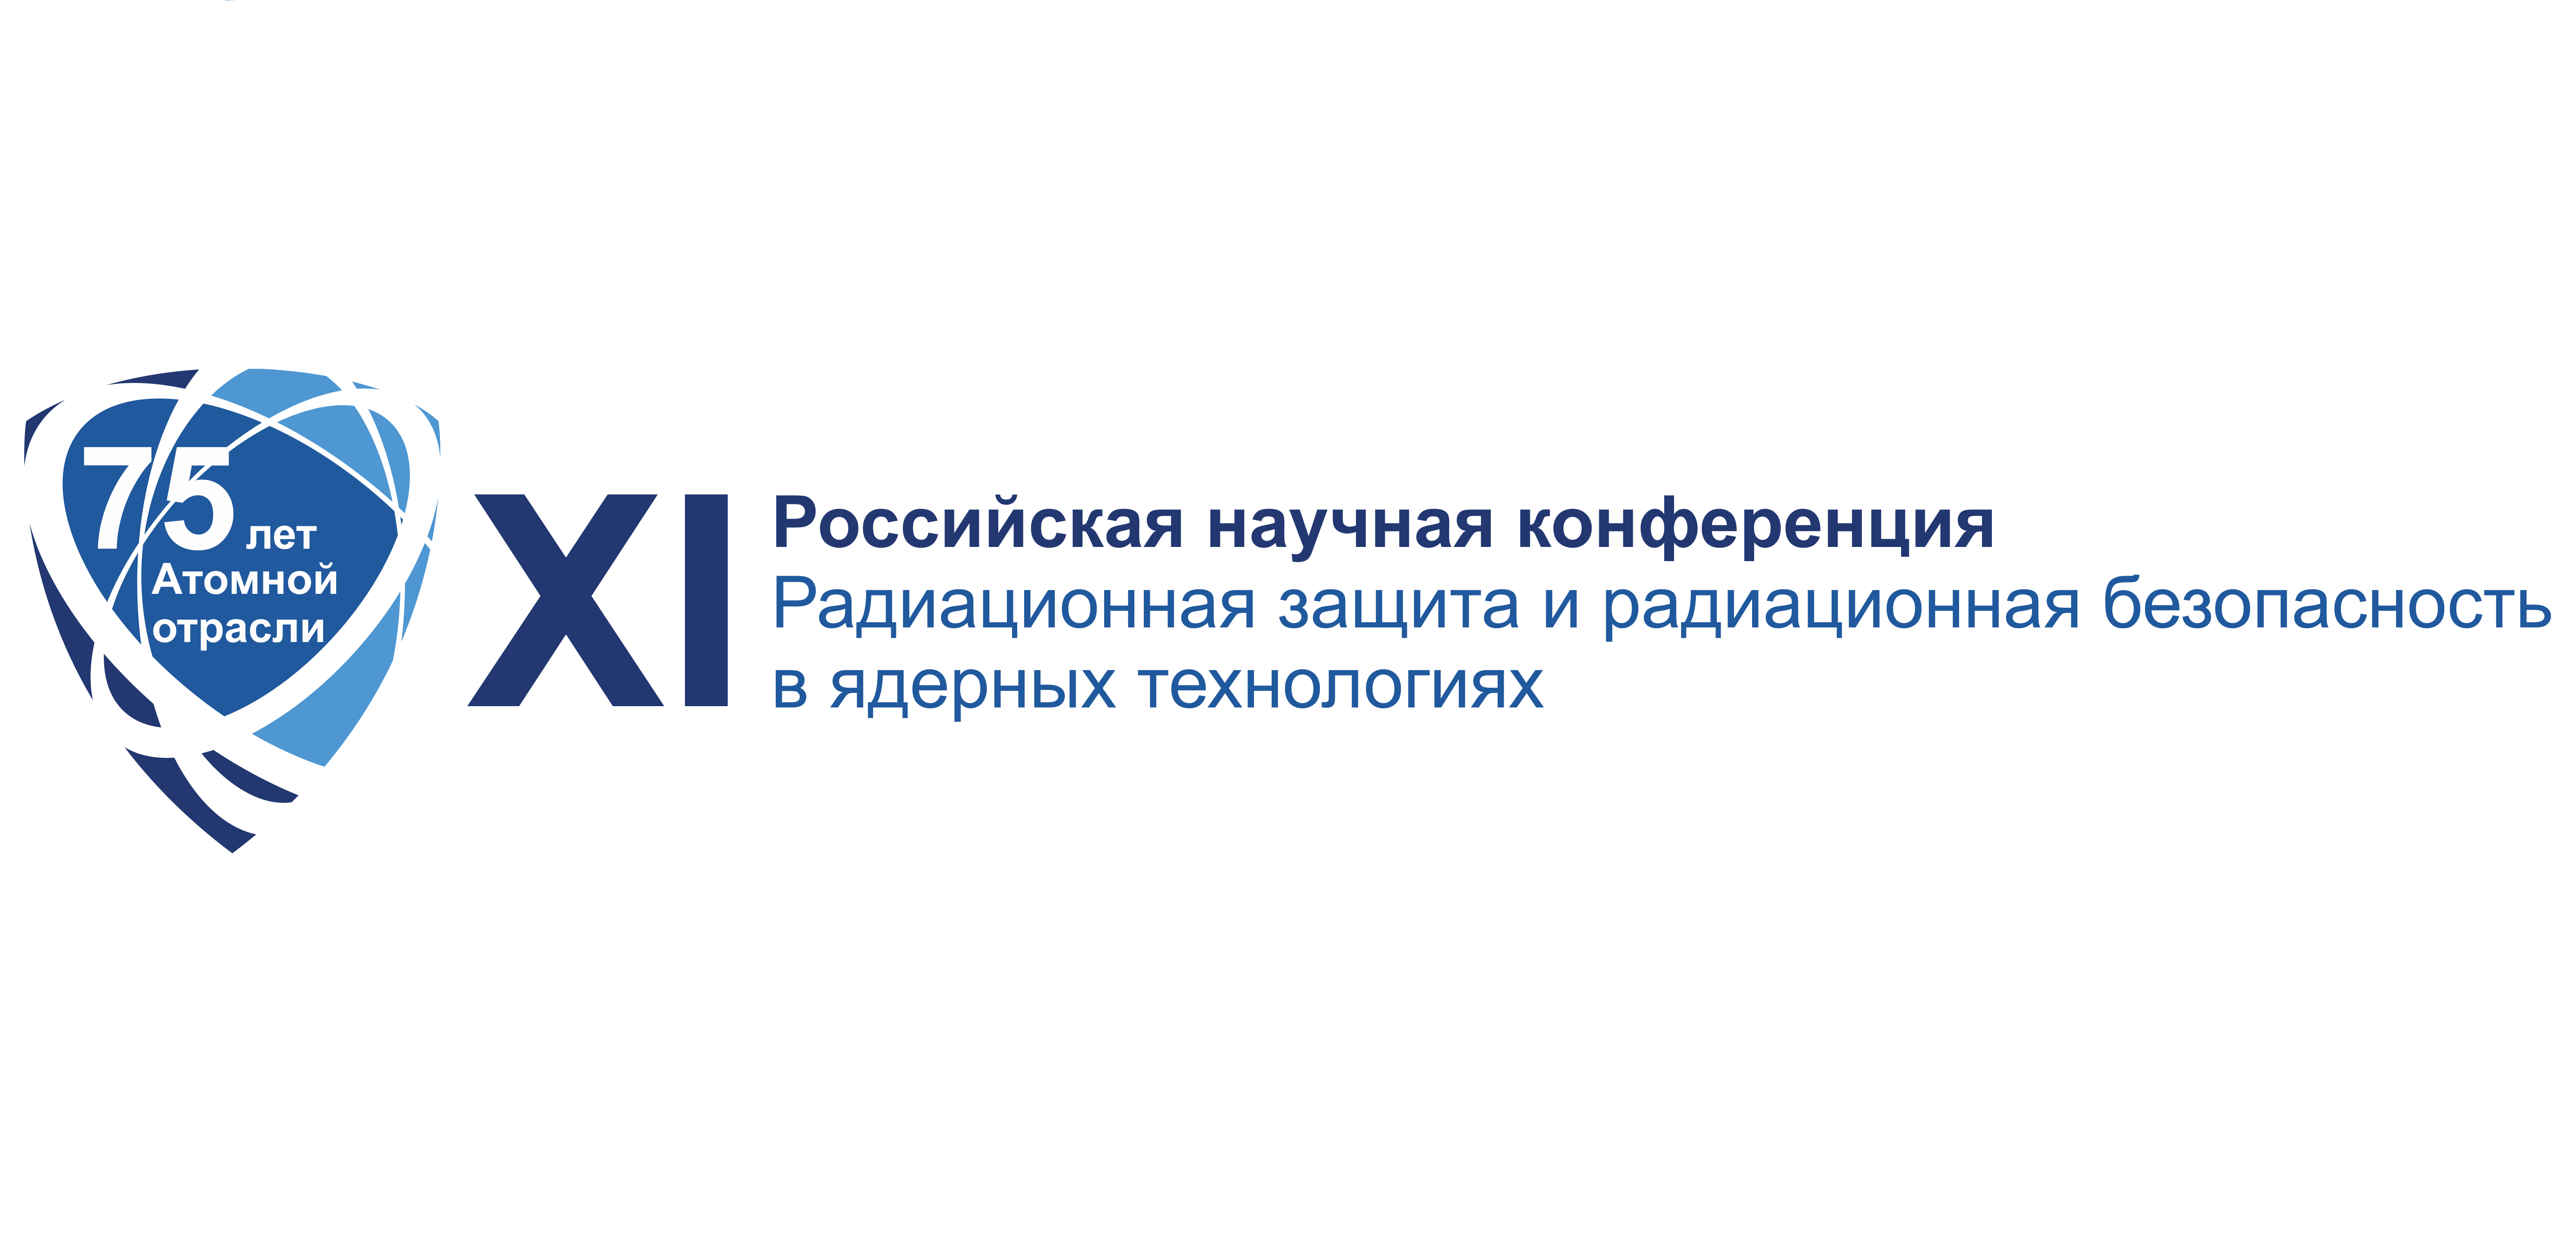 XI-ая Российская научная конференция «Радиационная защита и радиационная безопасность в ядерных технологиях»